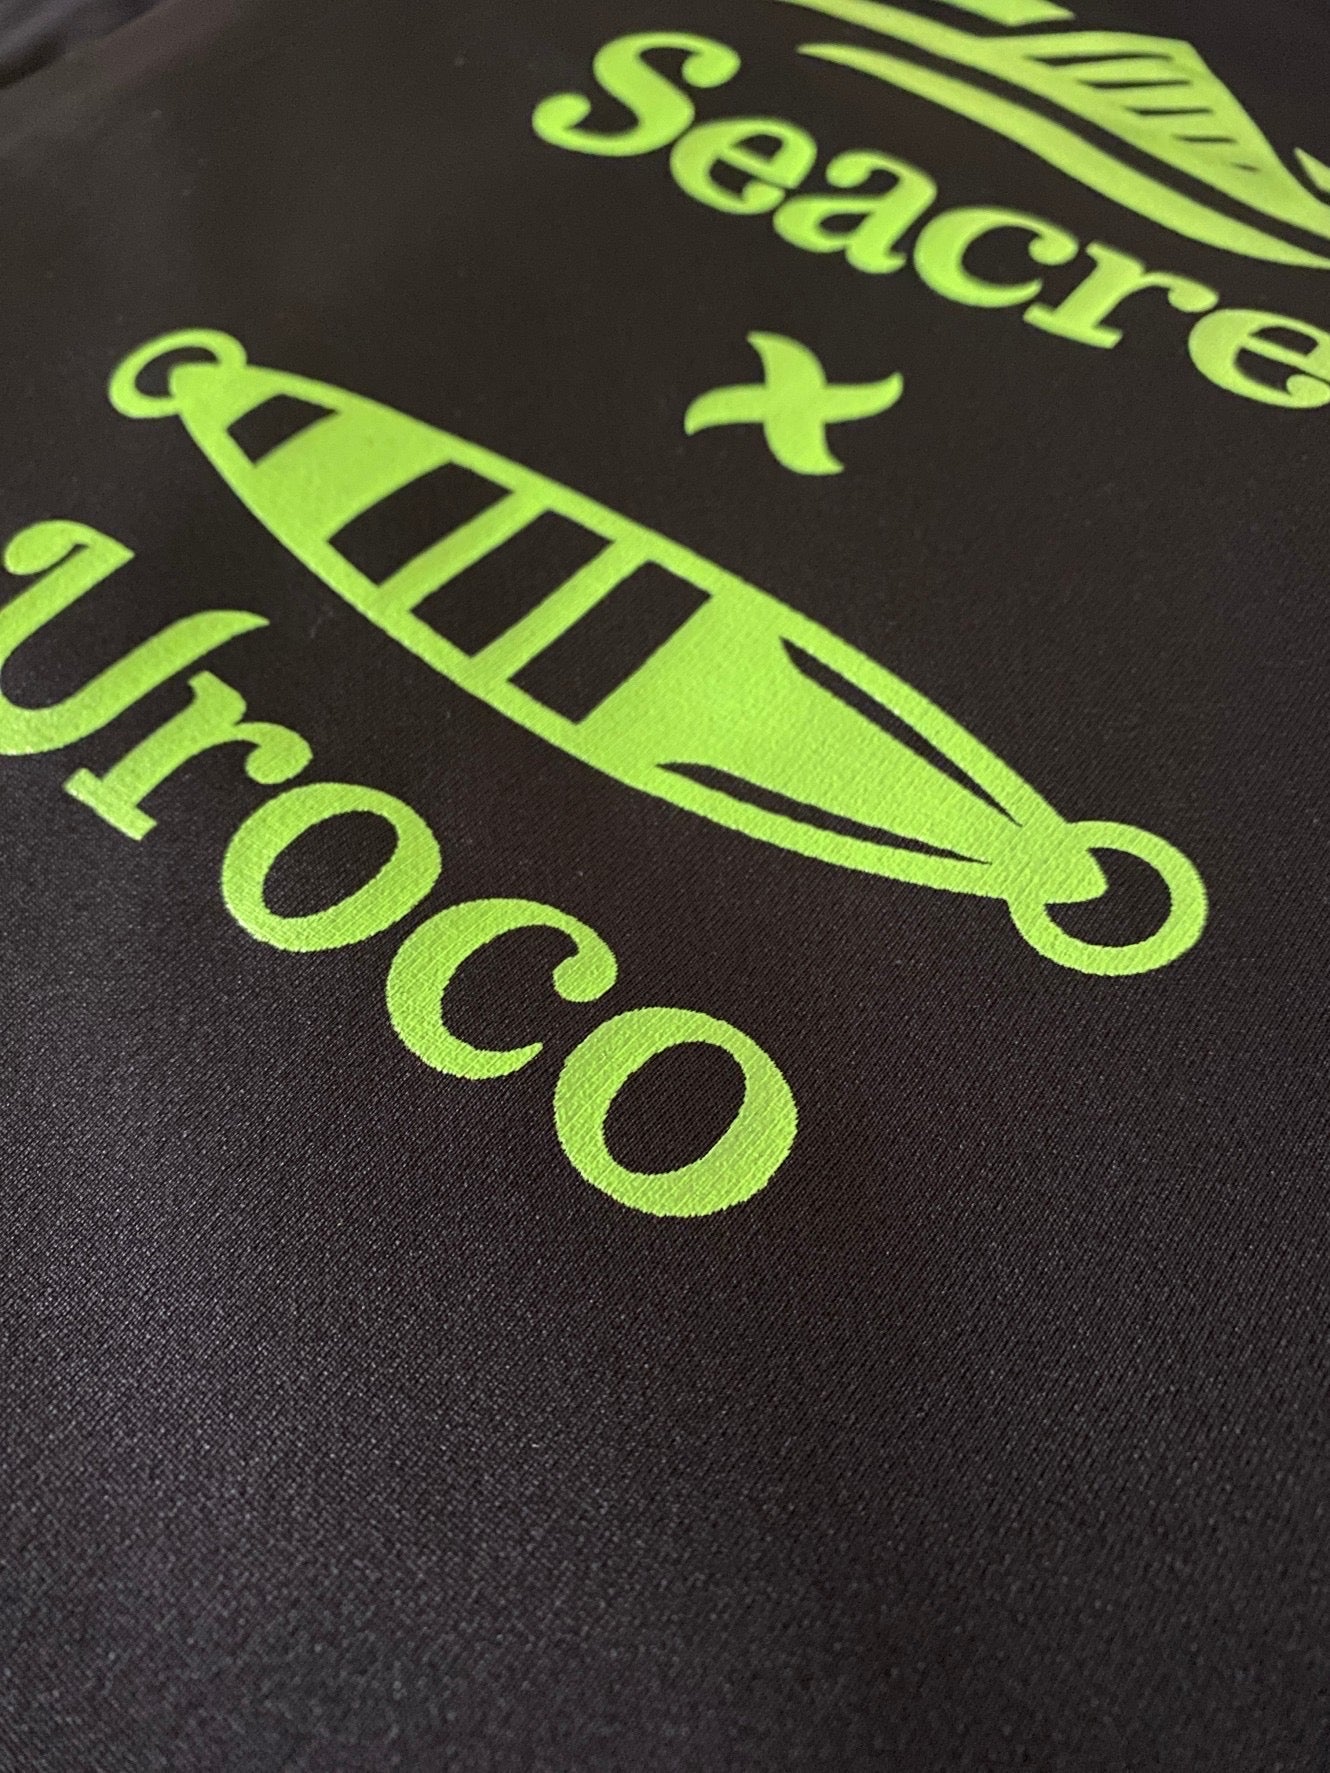 【予約商品】Seacret uroco コラボ シルキードライロングTシャツ シークレット ウロコ